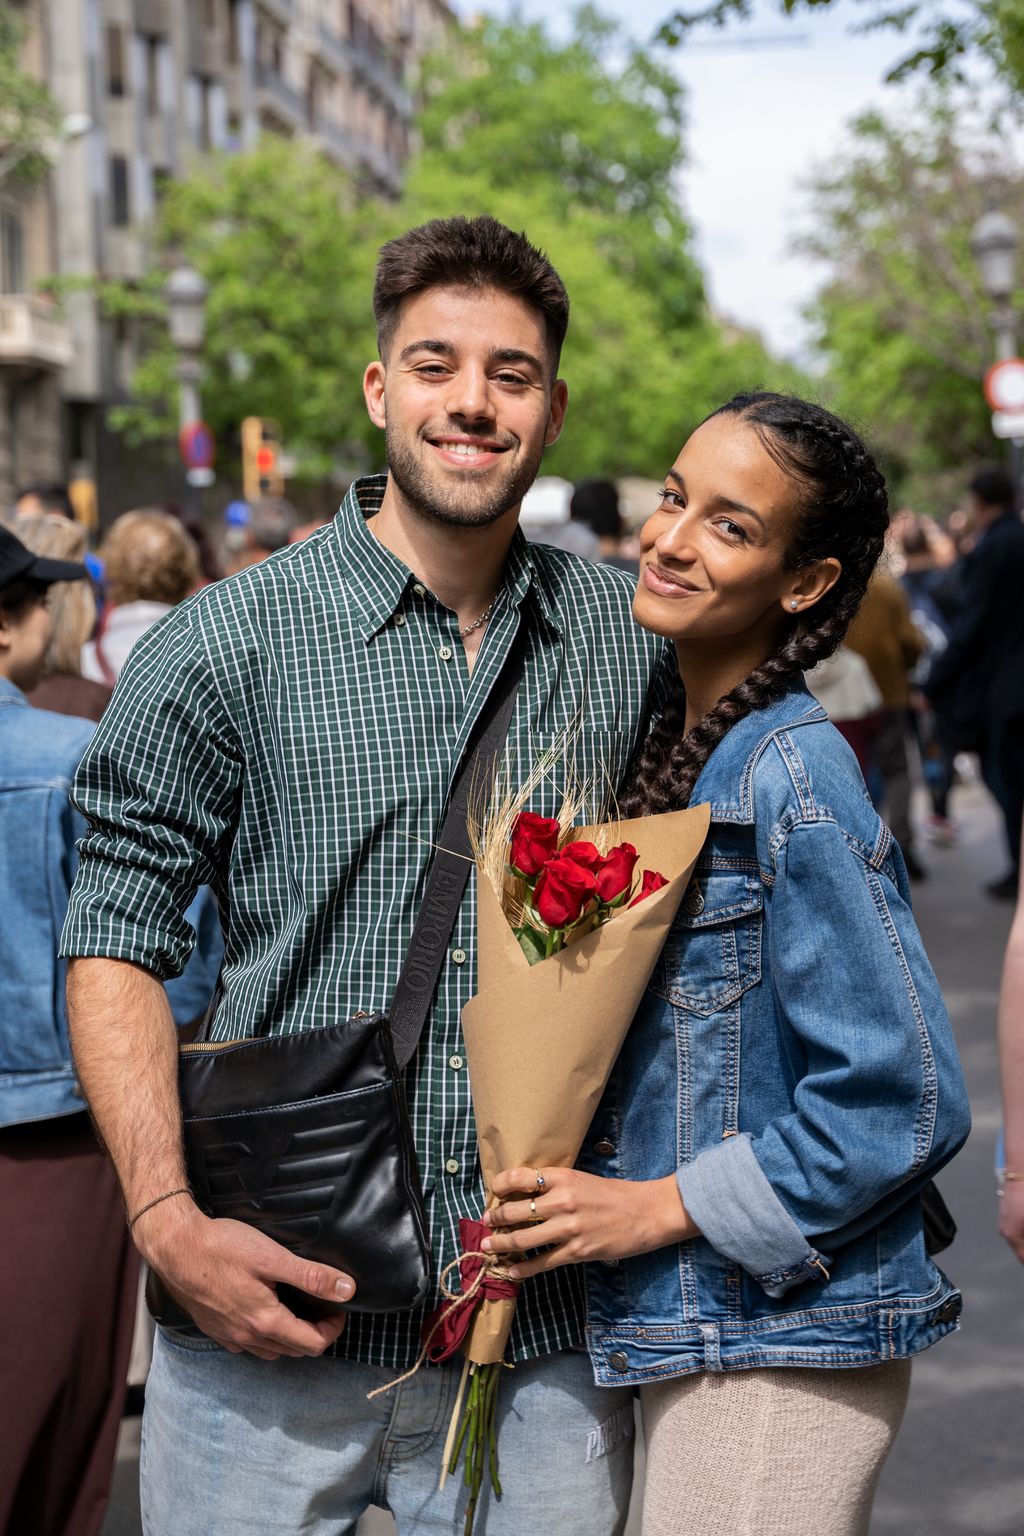 Retrat d'una parella jove a passeig de Gràcia el dia de Sant Jordi, amb la noia agafant un ram de roses vermelles.